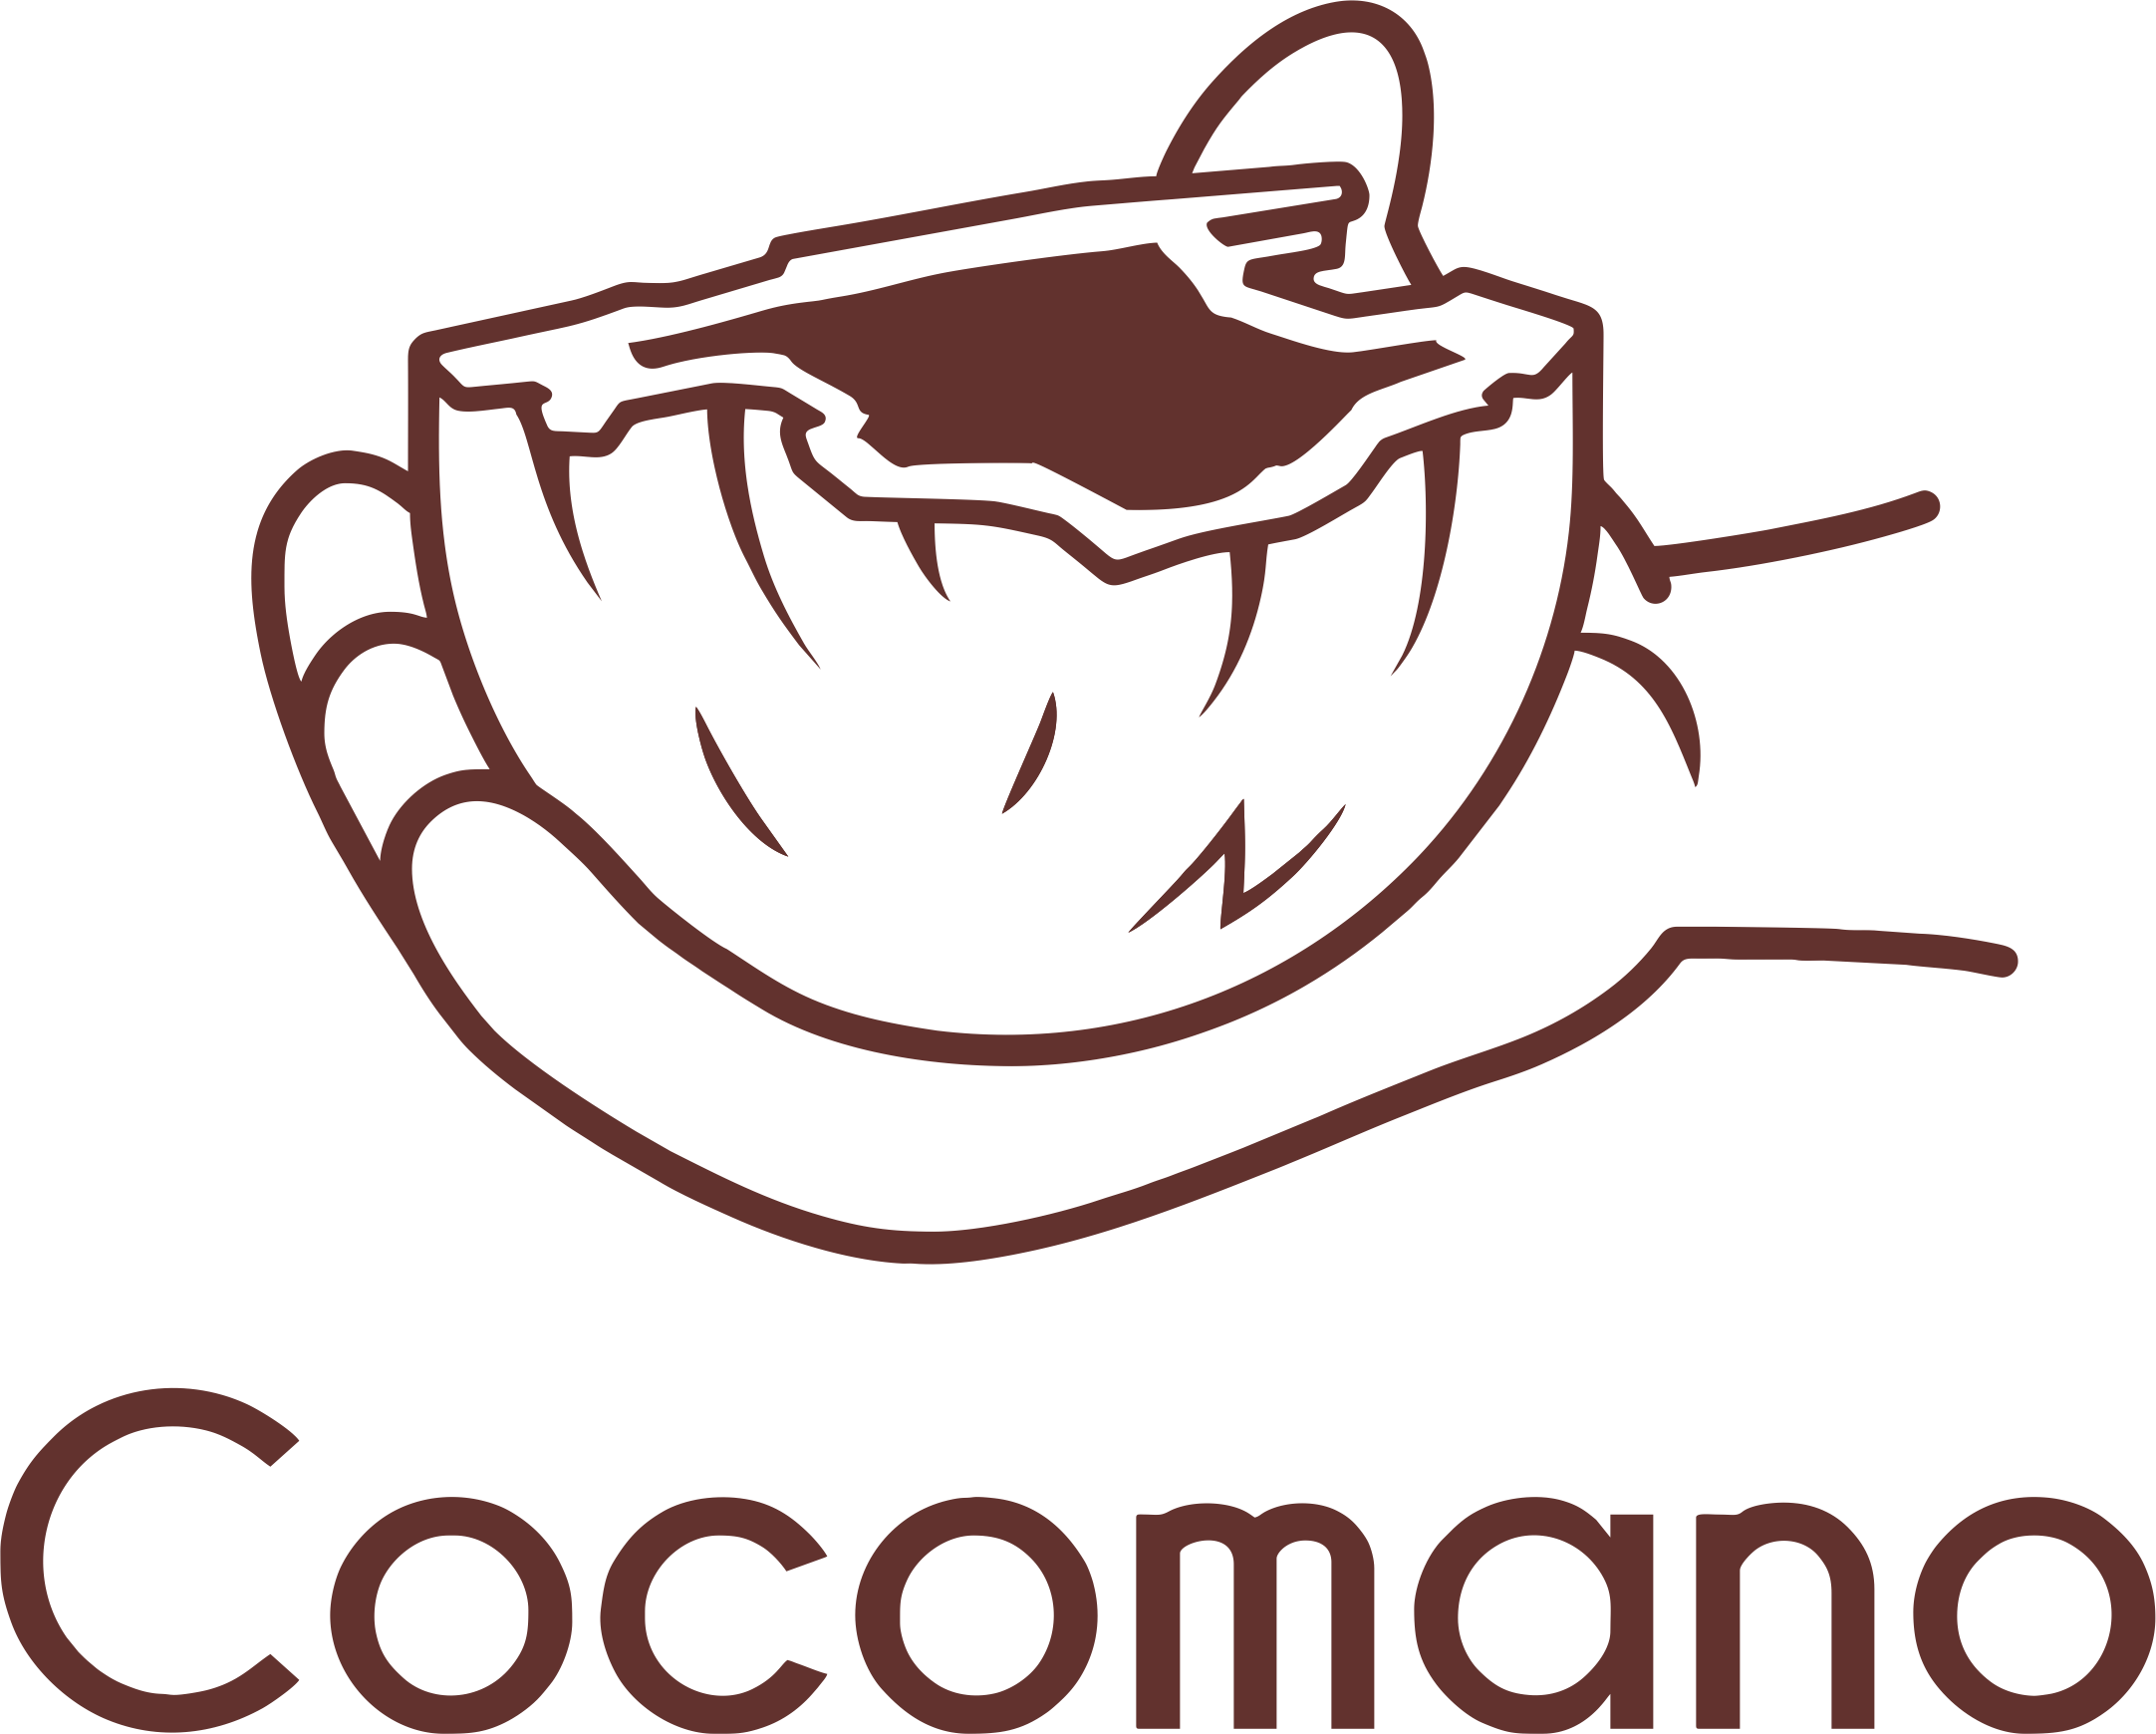 Cocomano 